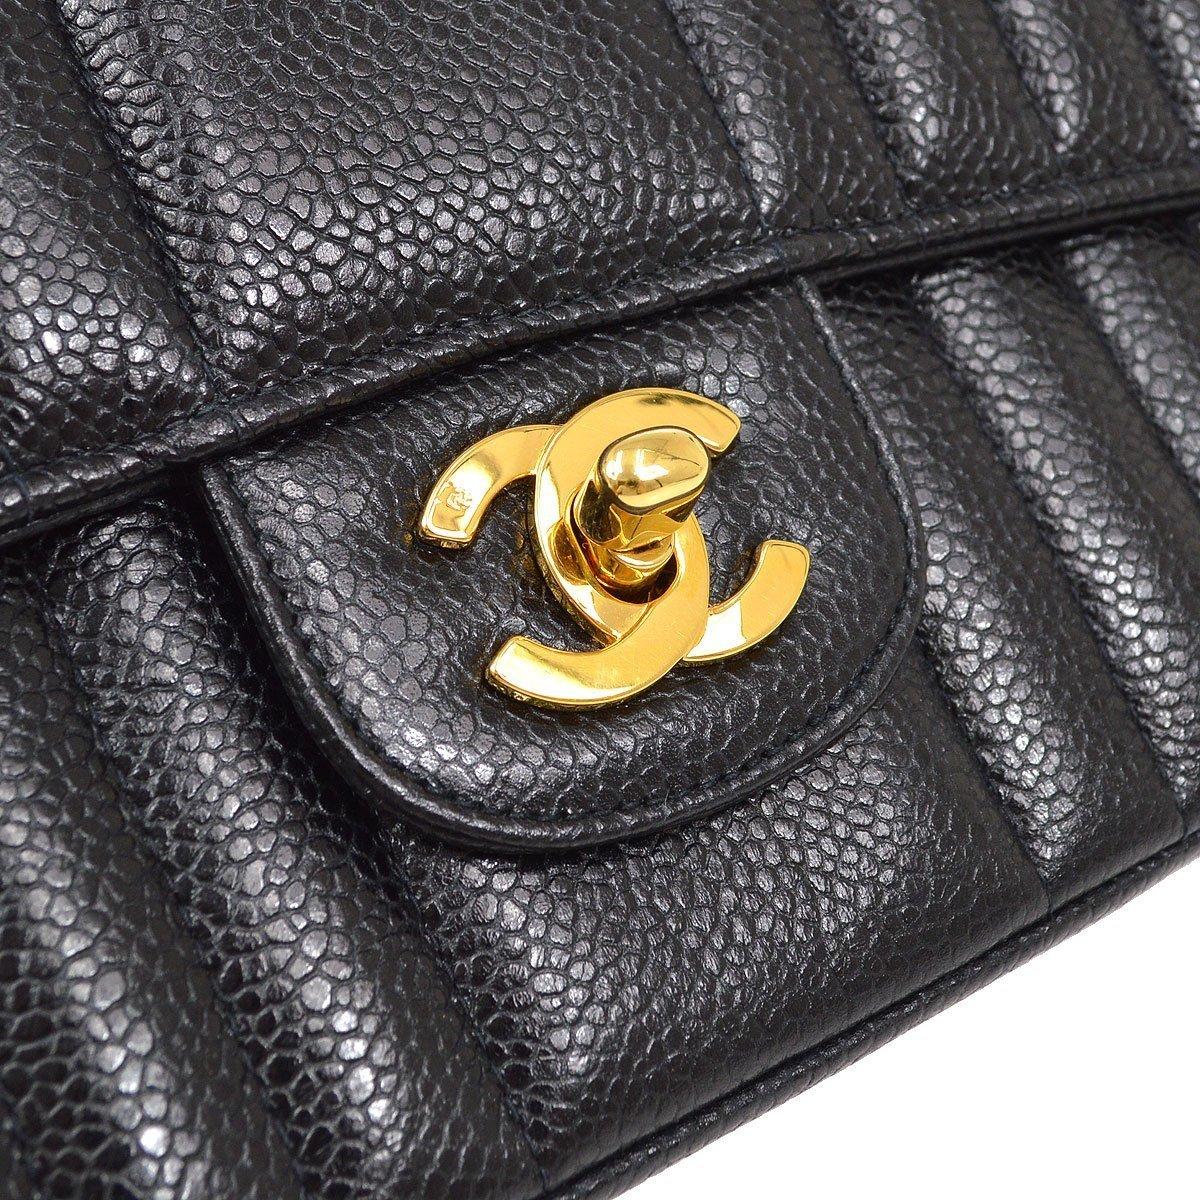 Pre-Owned Vintage By Zustand
Aus der Collection'S von 1994
Kaviar  Leder
Goldfarbene Hardware
Lederfutter
Maße: 9,75